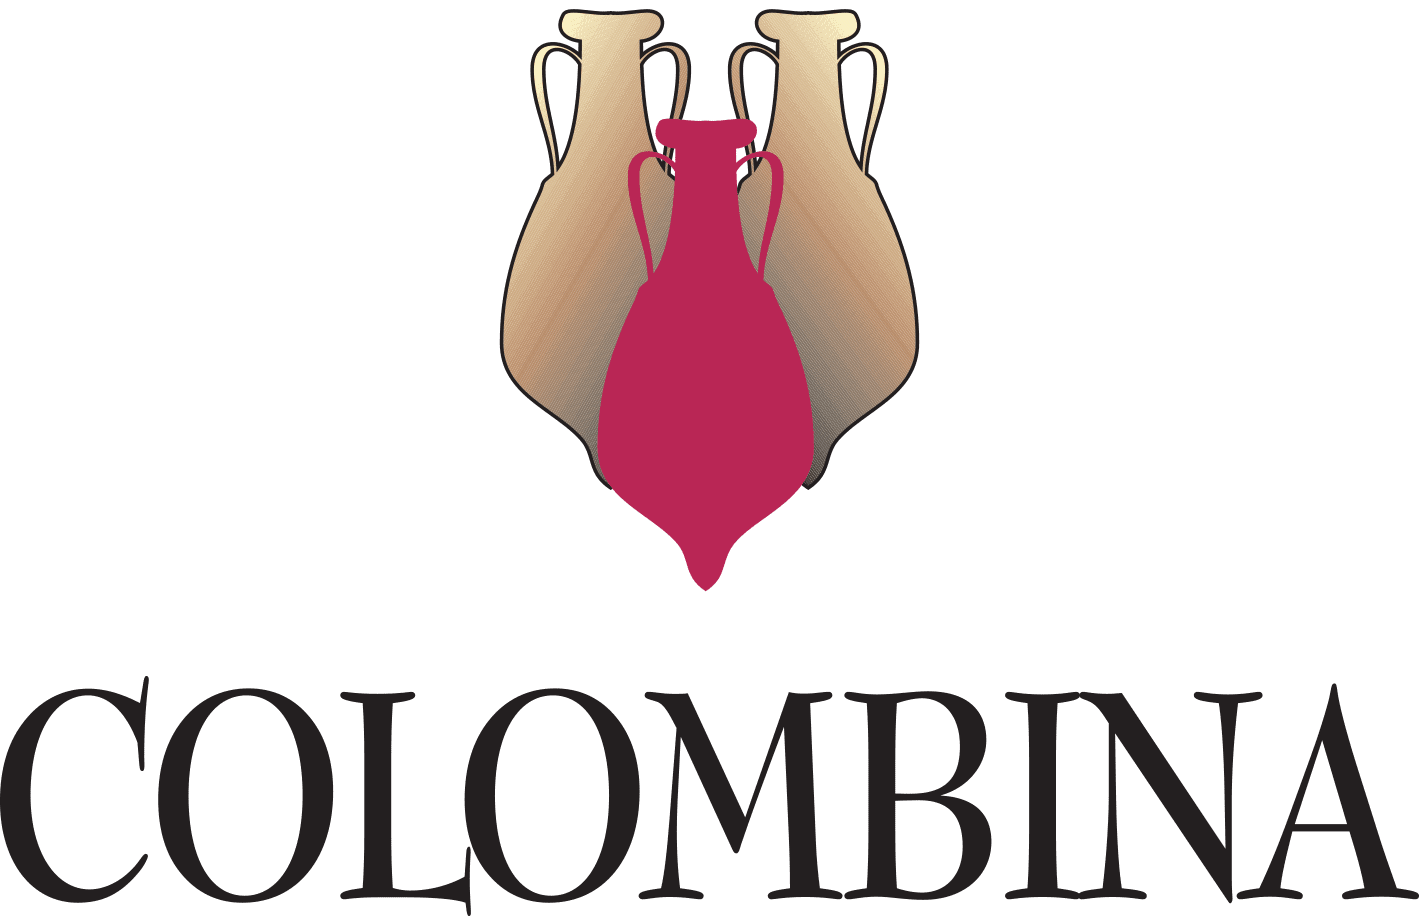 colombina bertinoro logo